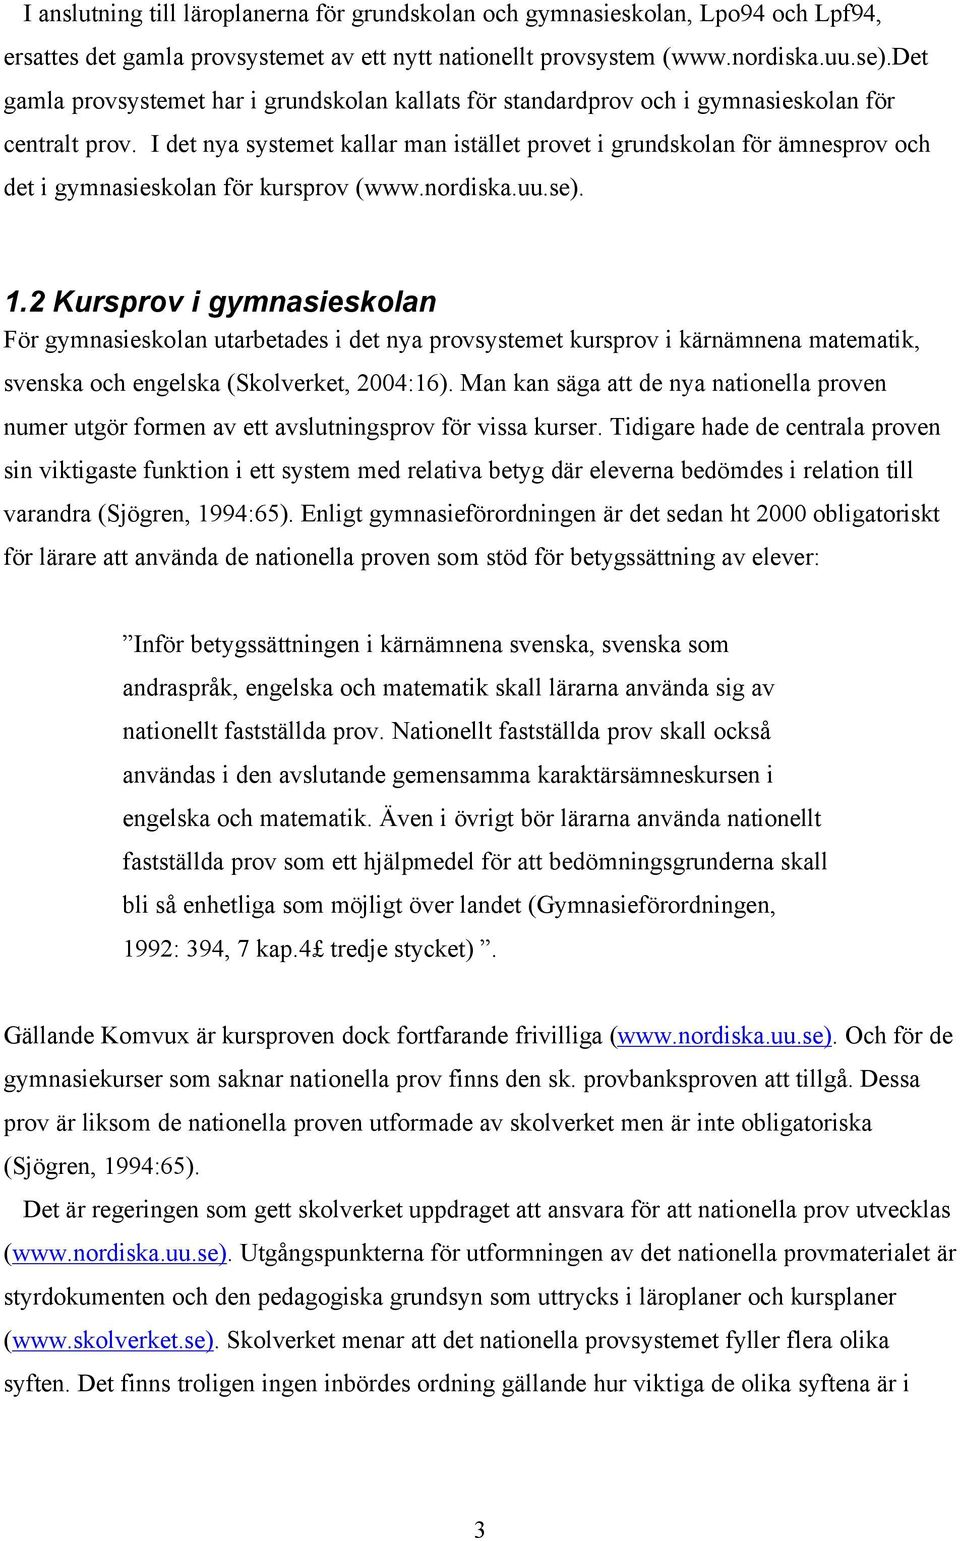 I det nya systemet kallar man istället provet i grundskolan för ämnesprov och det i gymnasieskolan för kursprov (www.nordiska.uu.se). 1.